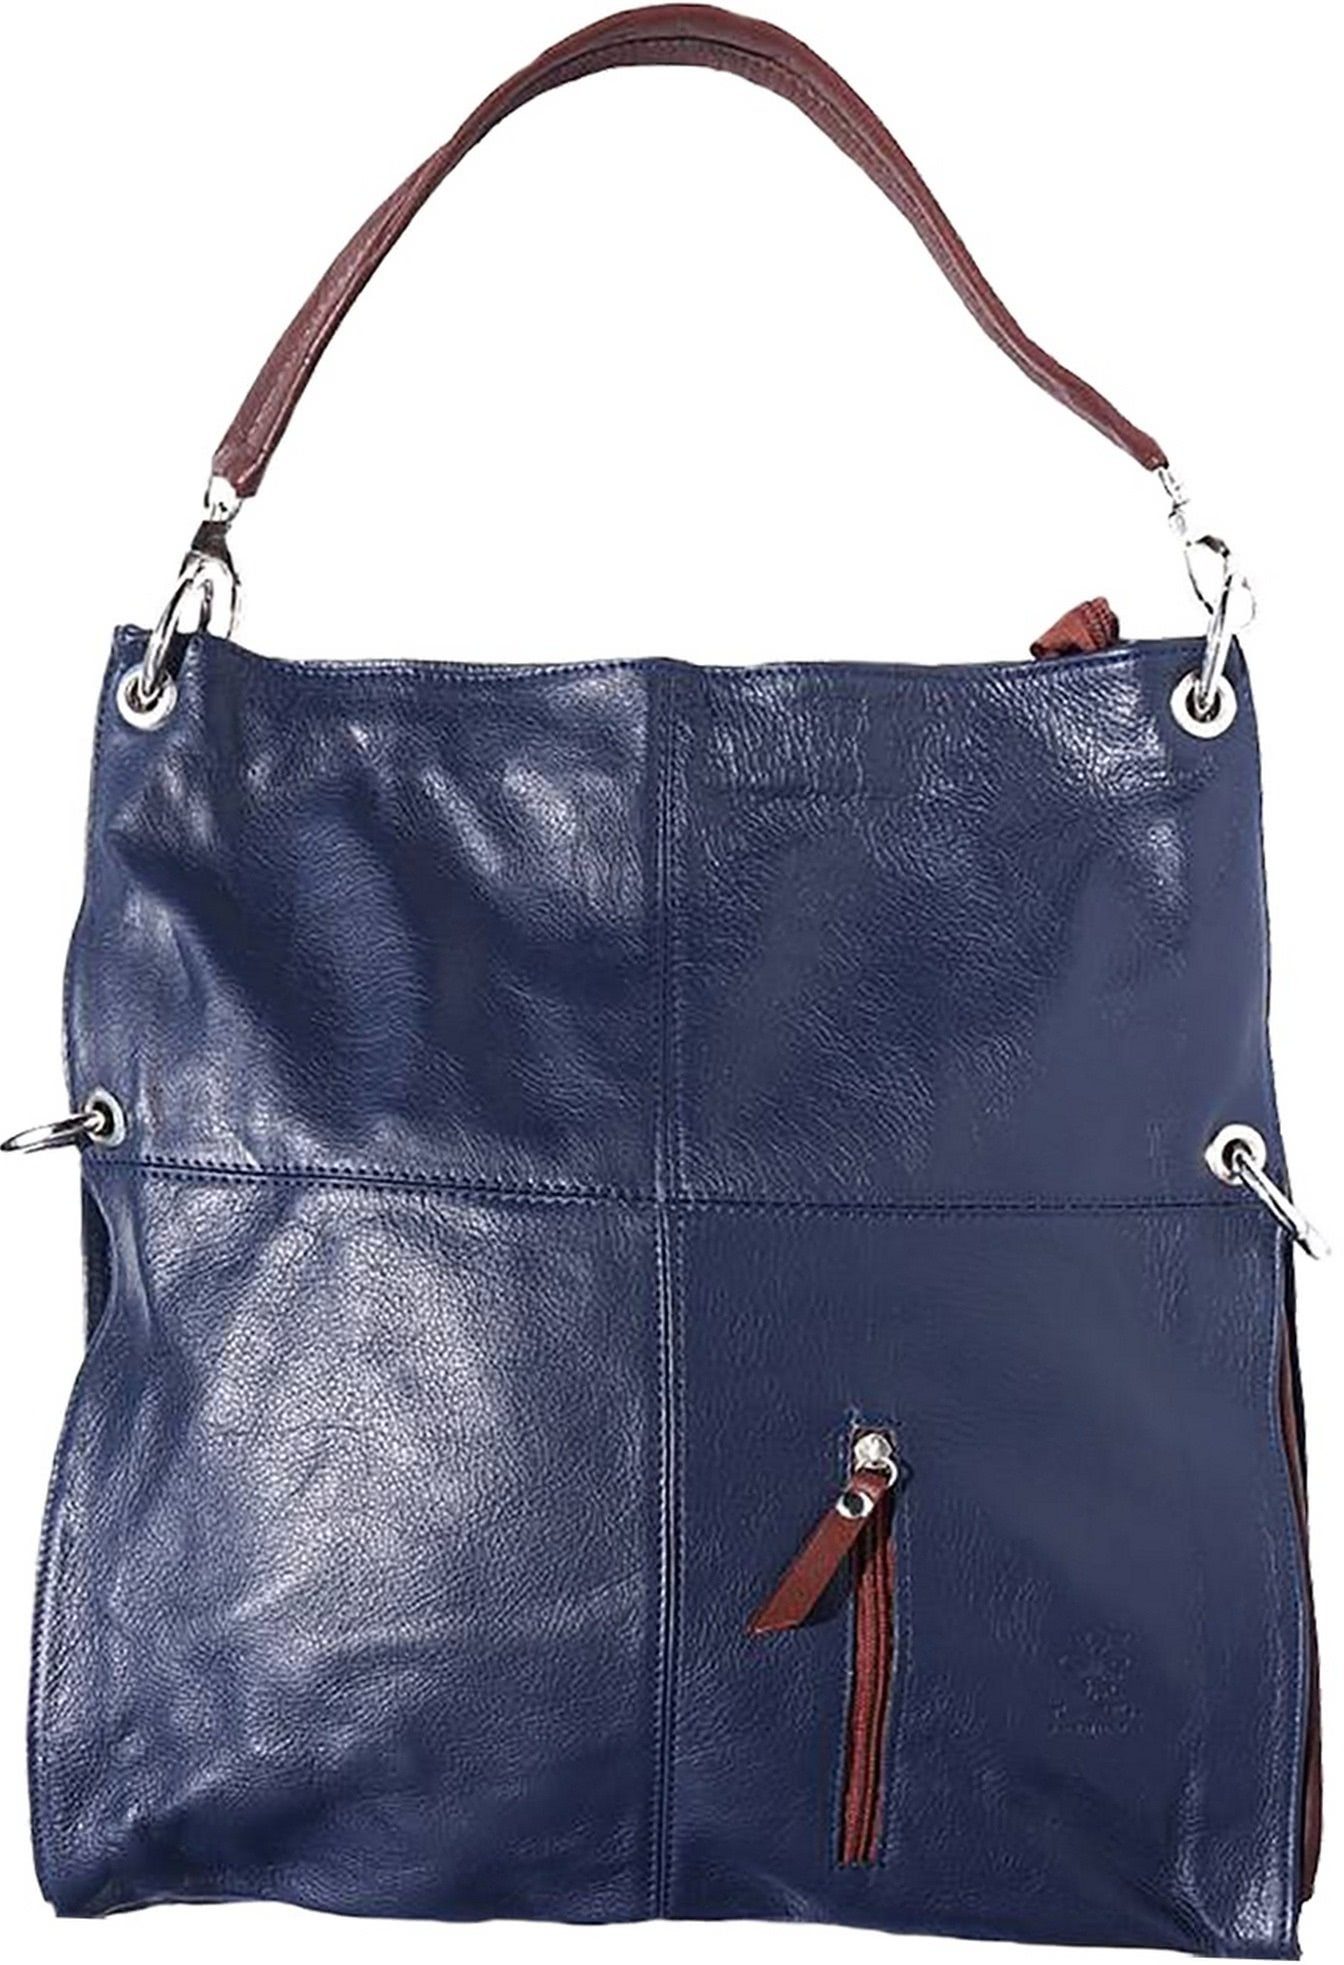 FLORENCE Schultertasche »D2OTF102M Florence Hobo Bag Echtleder Handtasche«  (Beuteltasche), Damen Tasche aus Echtleder in blau, braun, ca. 37cm Breite,  Made-In Italy online kaufen | OTTO